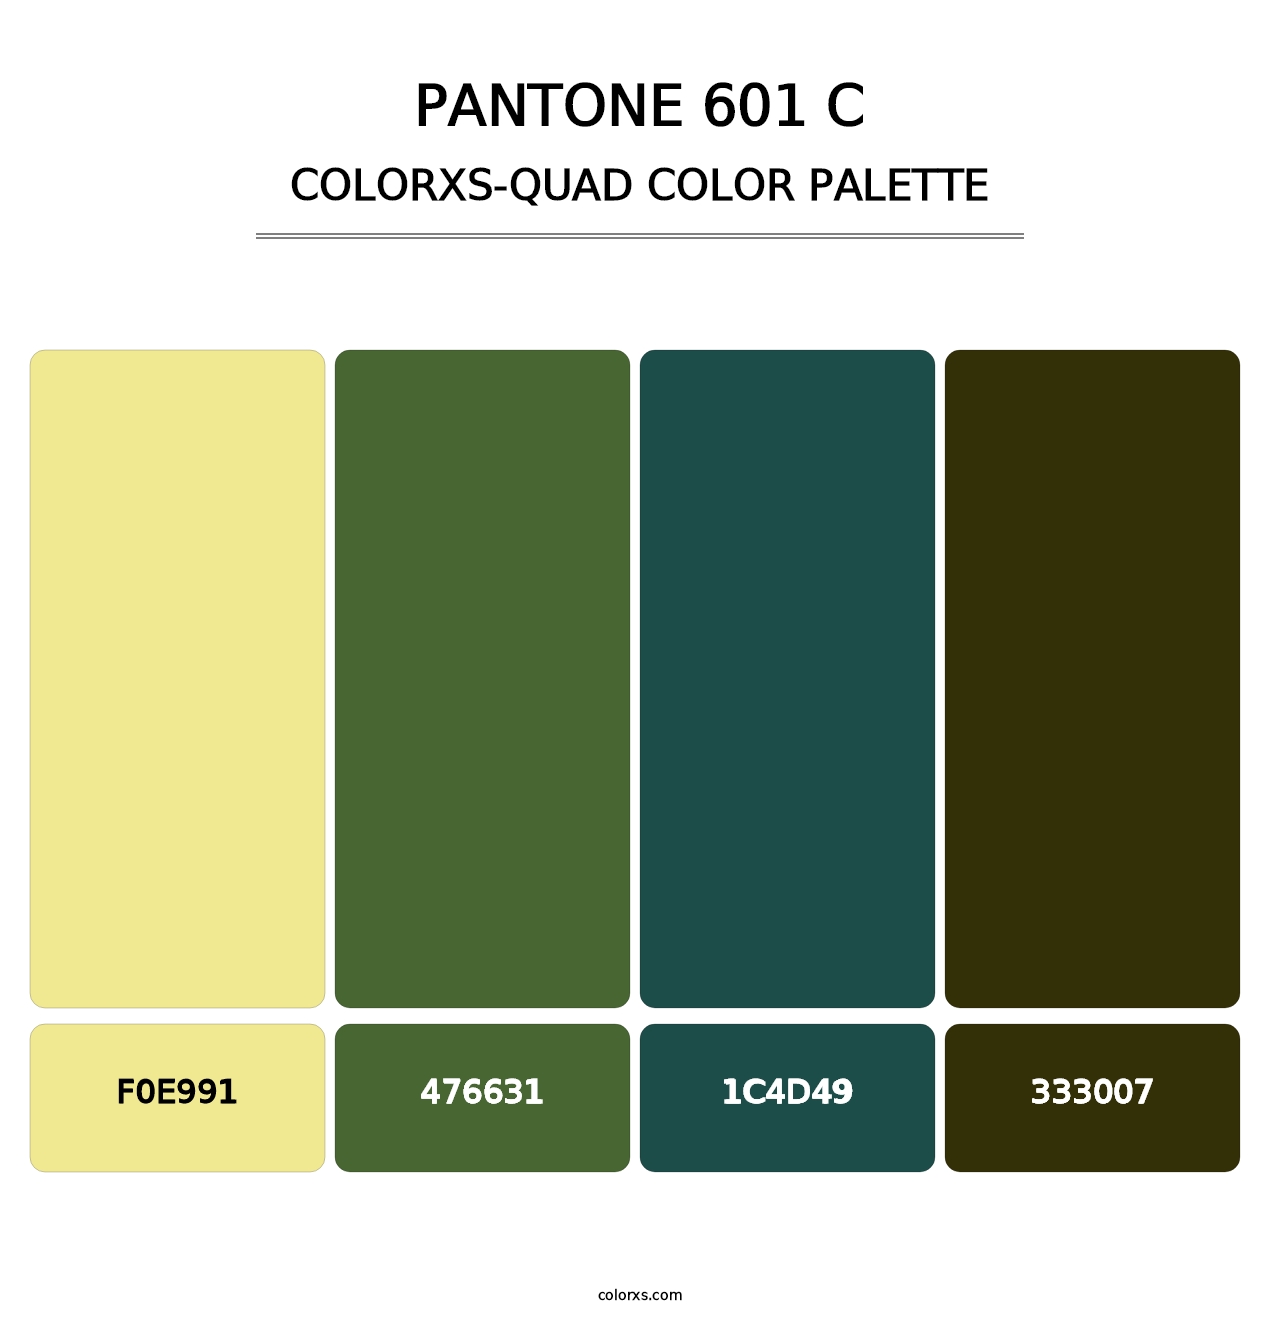 PANTONE 601 C - Colorxs Quad Palette